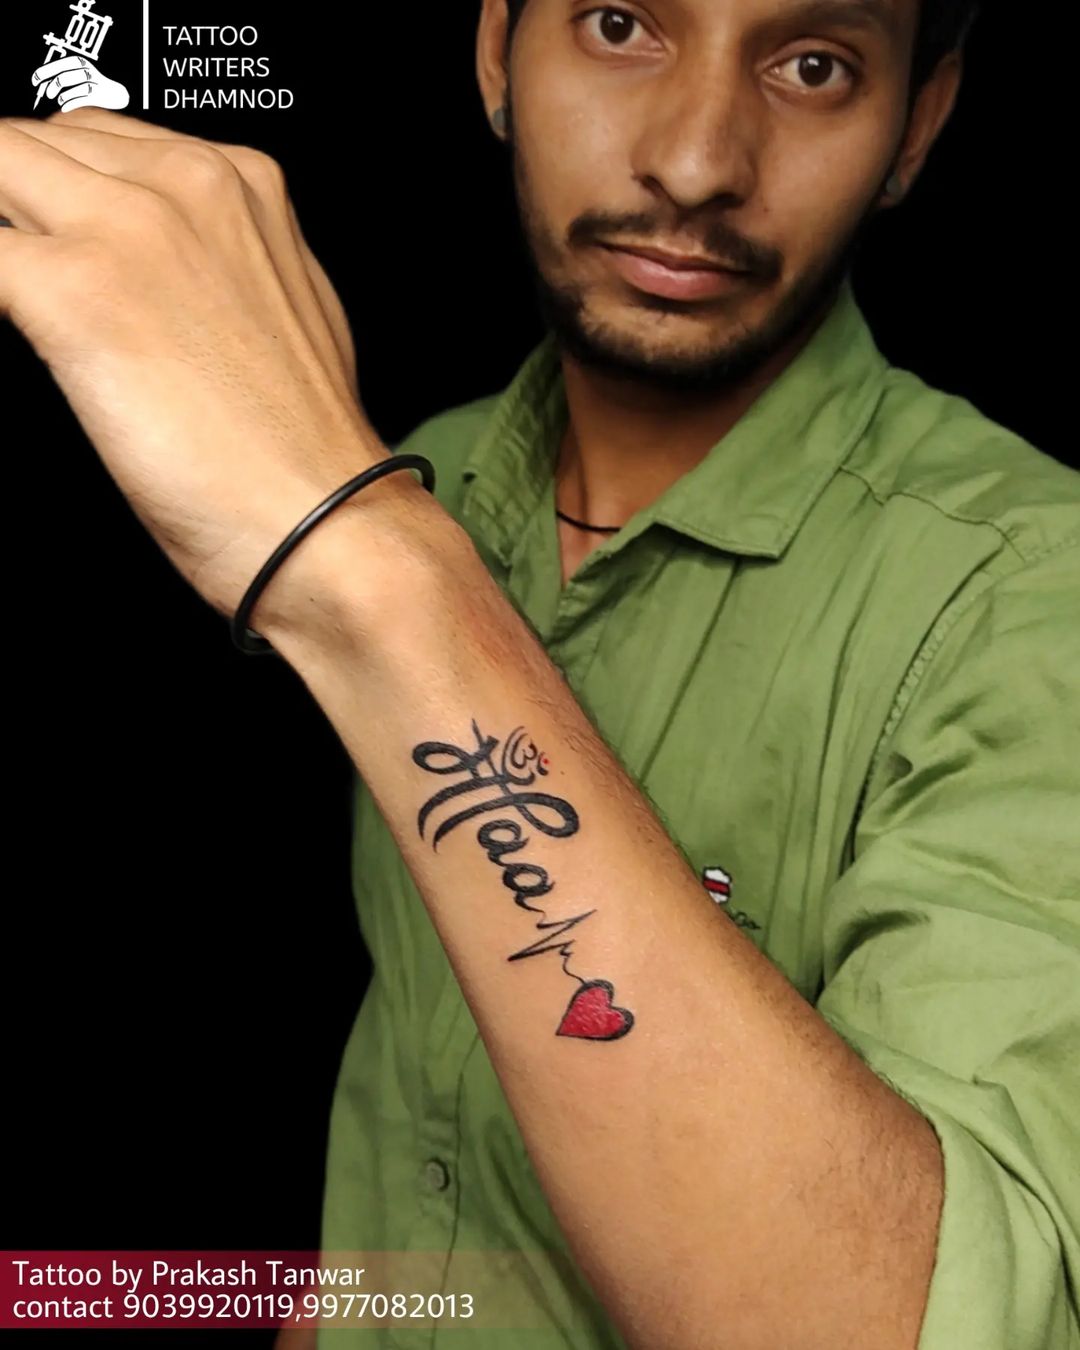 Maa paa tattoo hand tattoo flute tattoo maatattoo paatattoo designs tattoo  ideas tattoo by Sachin sharma  Flute tattoo Tattoo designs Hand tattoos